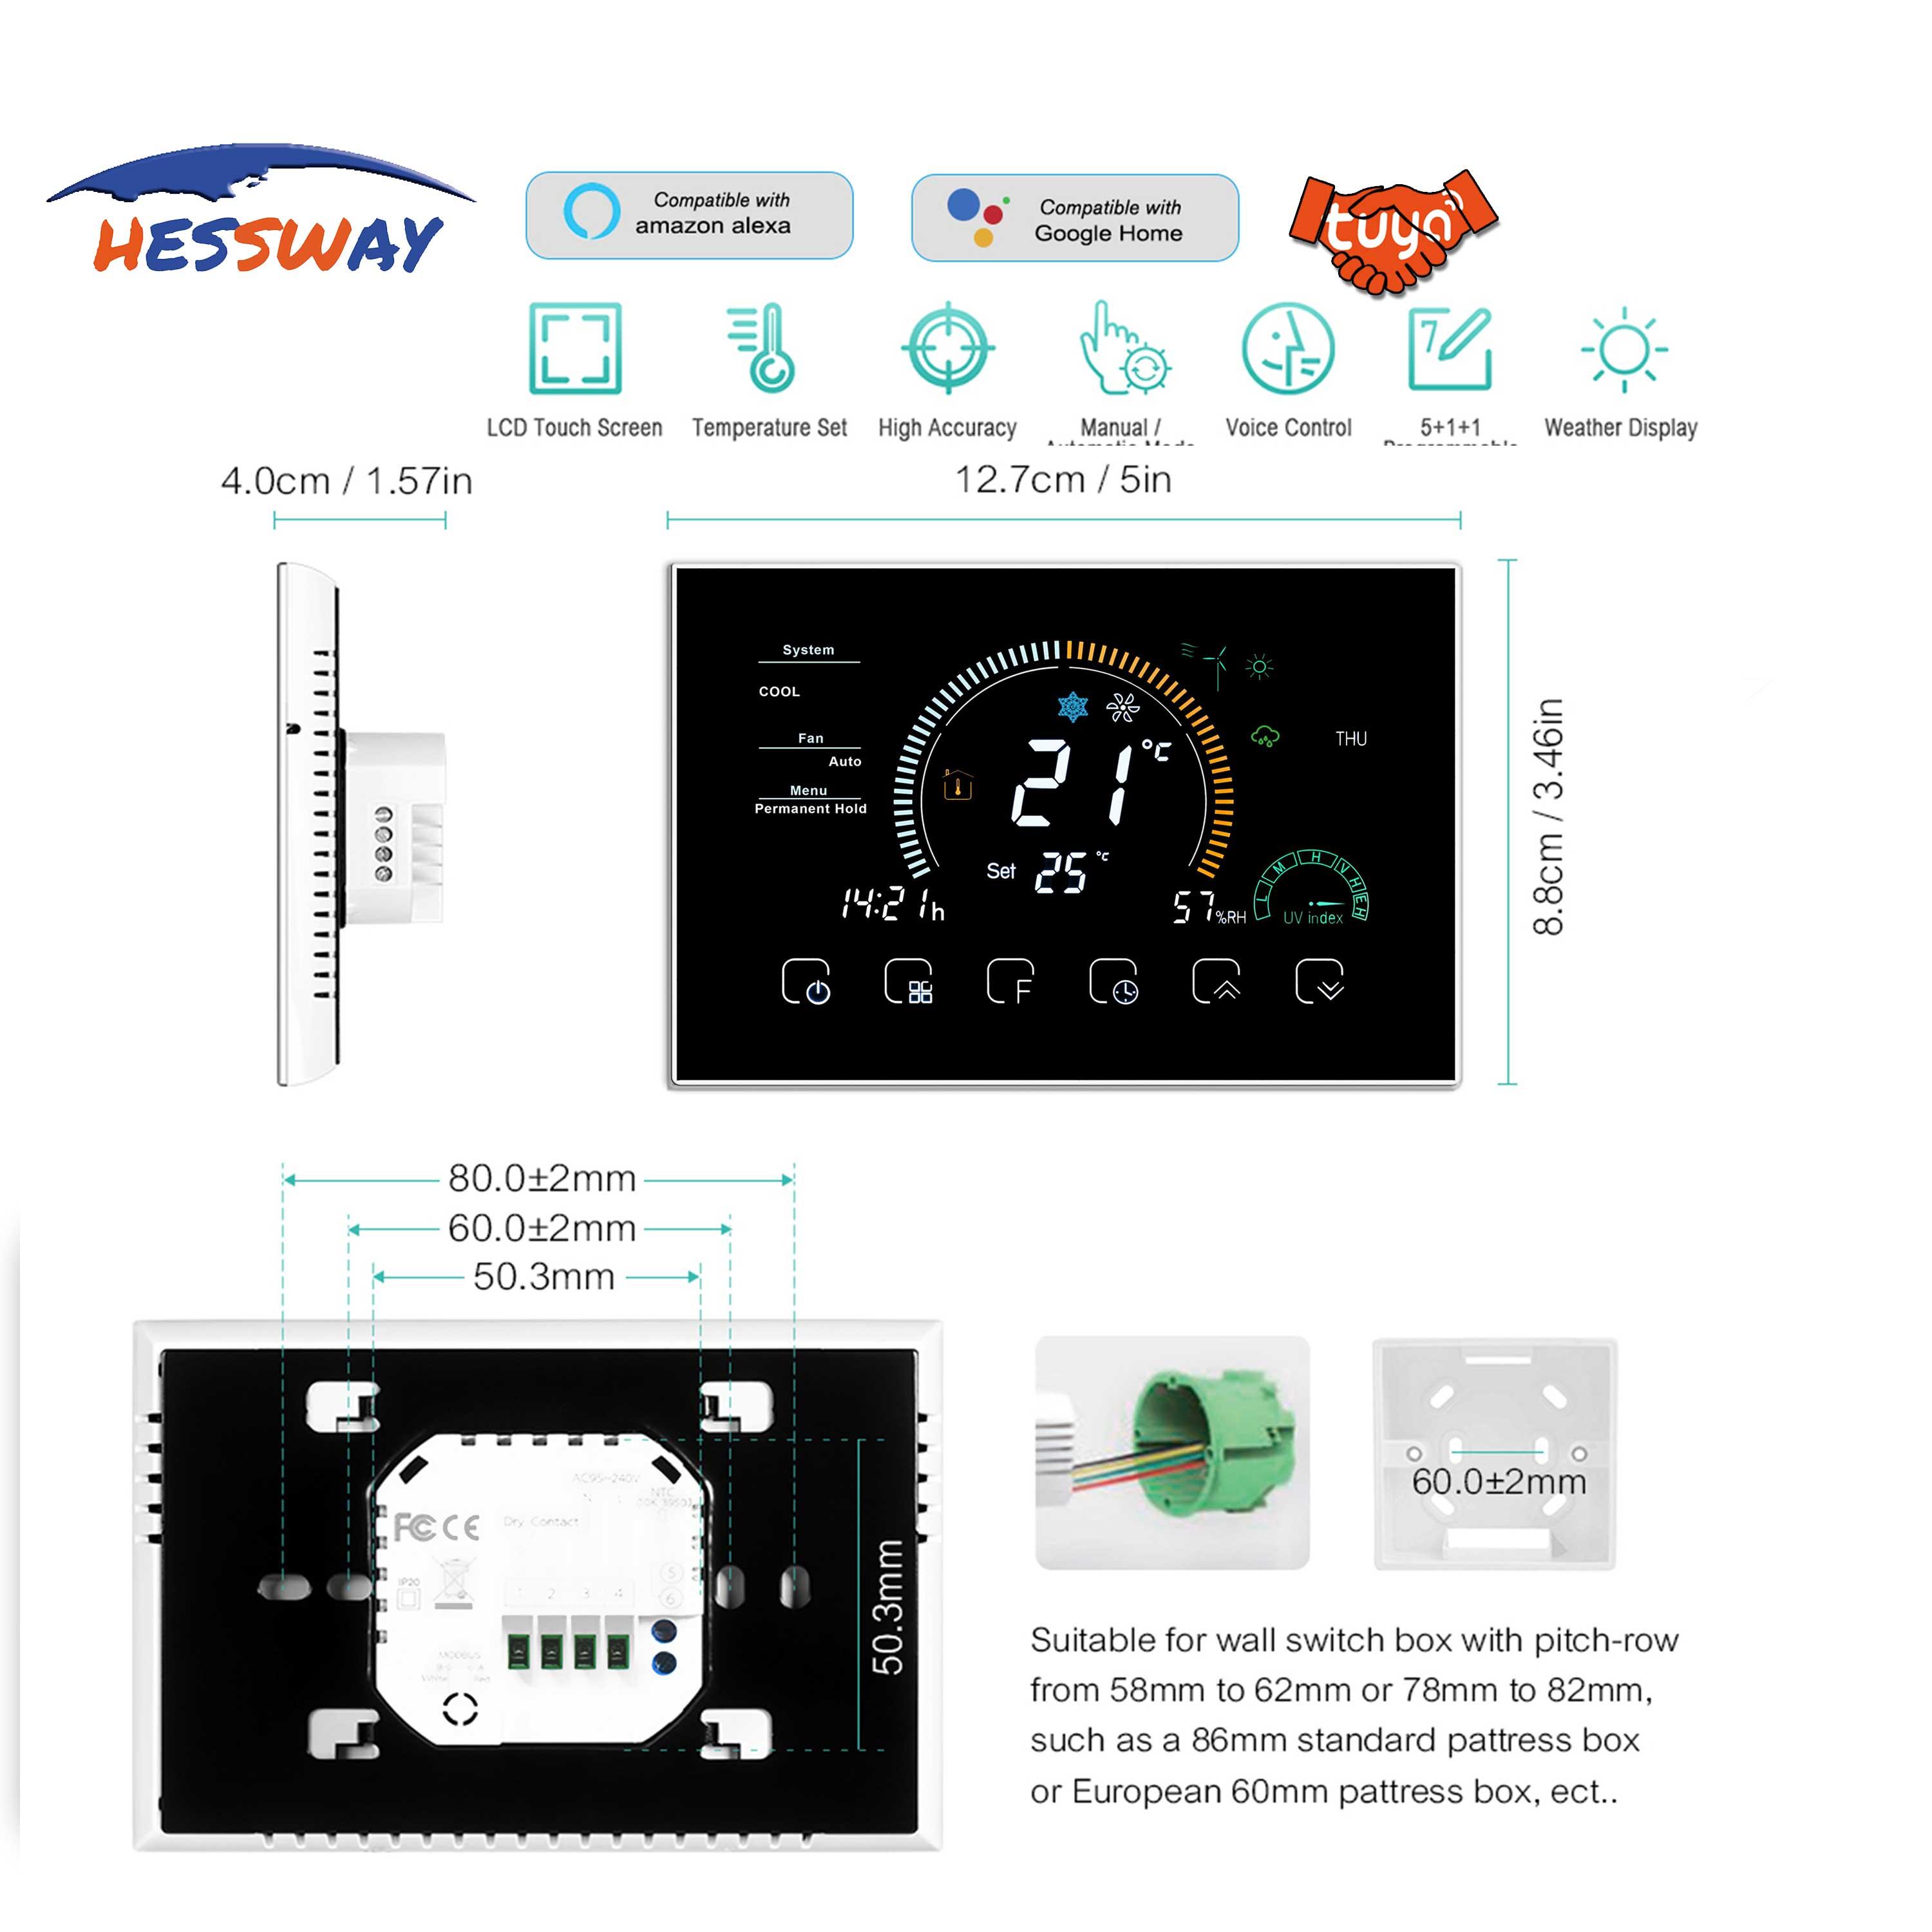 Изображение товара: TUYA WI-FI Новый центральный кондиционер воздуха термостат Температура контроллер для Американская классификация проводов 2р/4 трубы 3 Скорость блок змеевика вентилятора 4,8 дюймов Экран